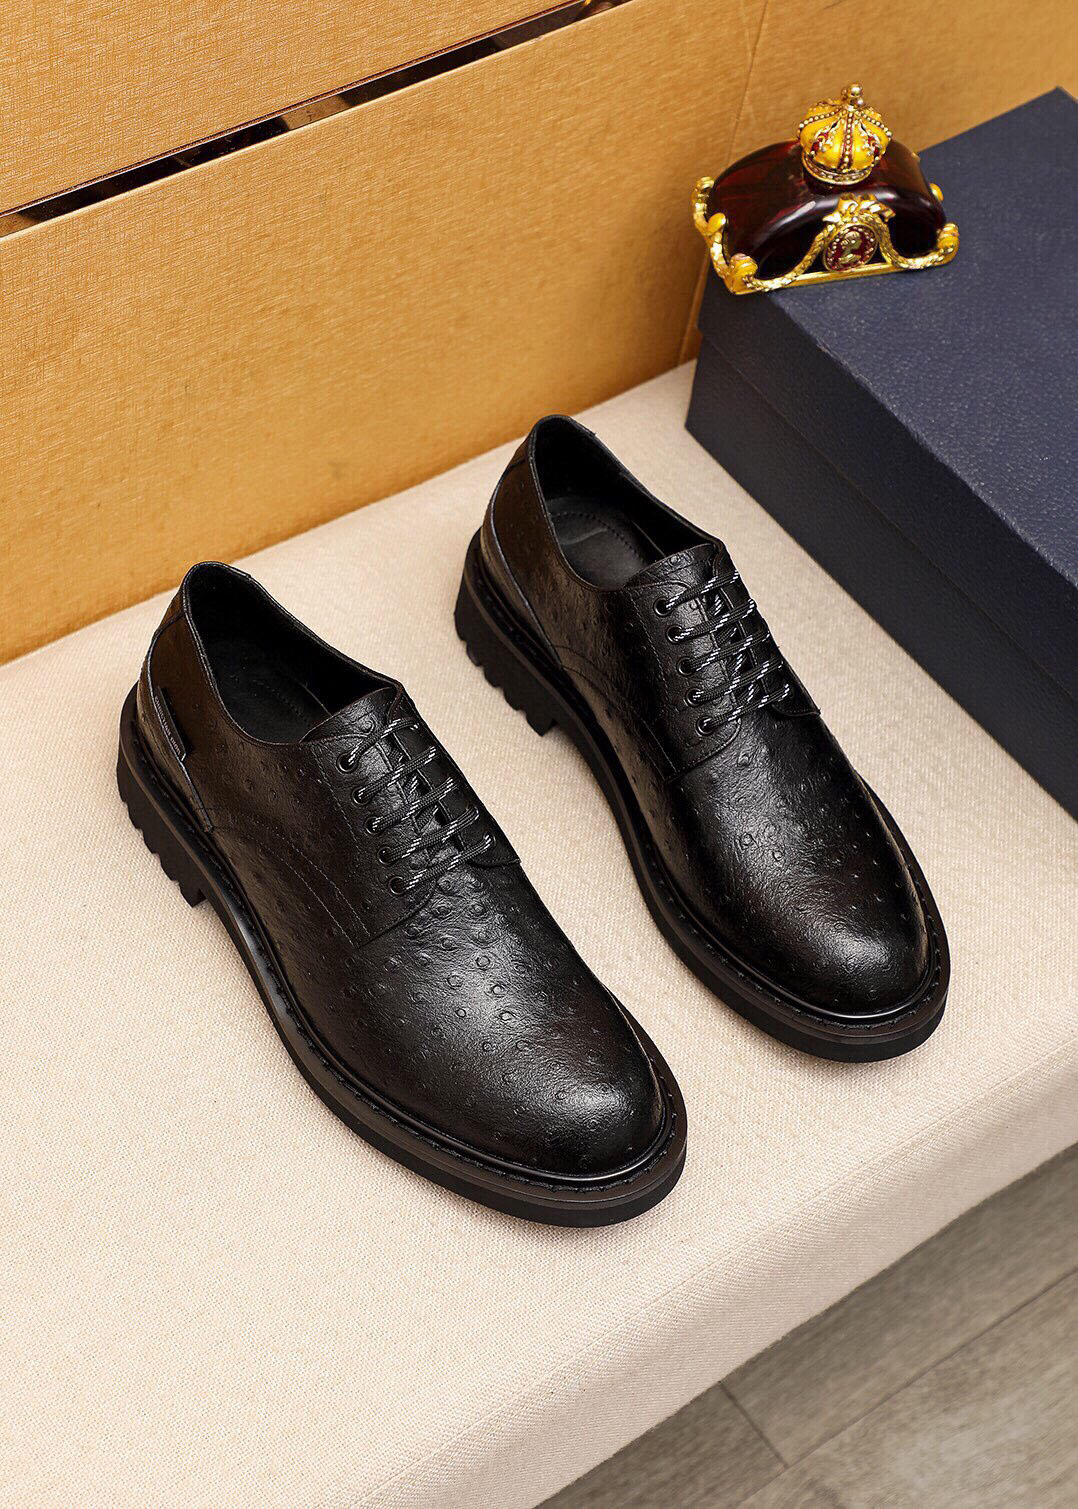 Zapatos de vestir para hombre, zapatos planos de cuero genuino de alta calidad, zapatos Oxford clásicos de negocios para fiesta y boda, talla 38-45, novedad de 2023